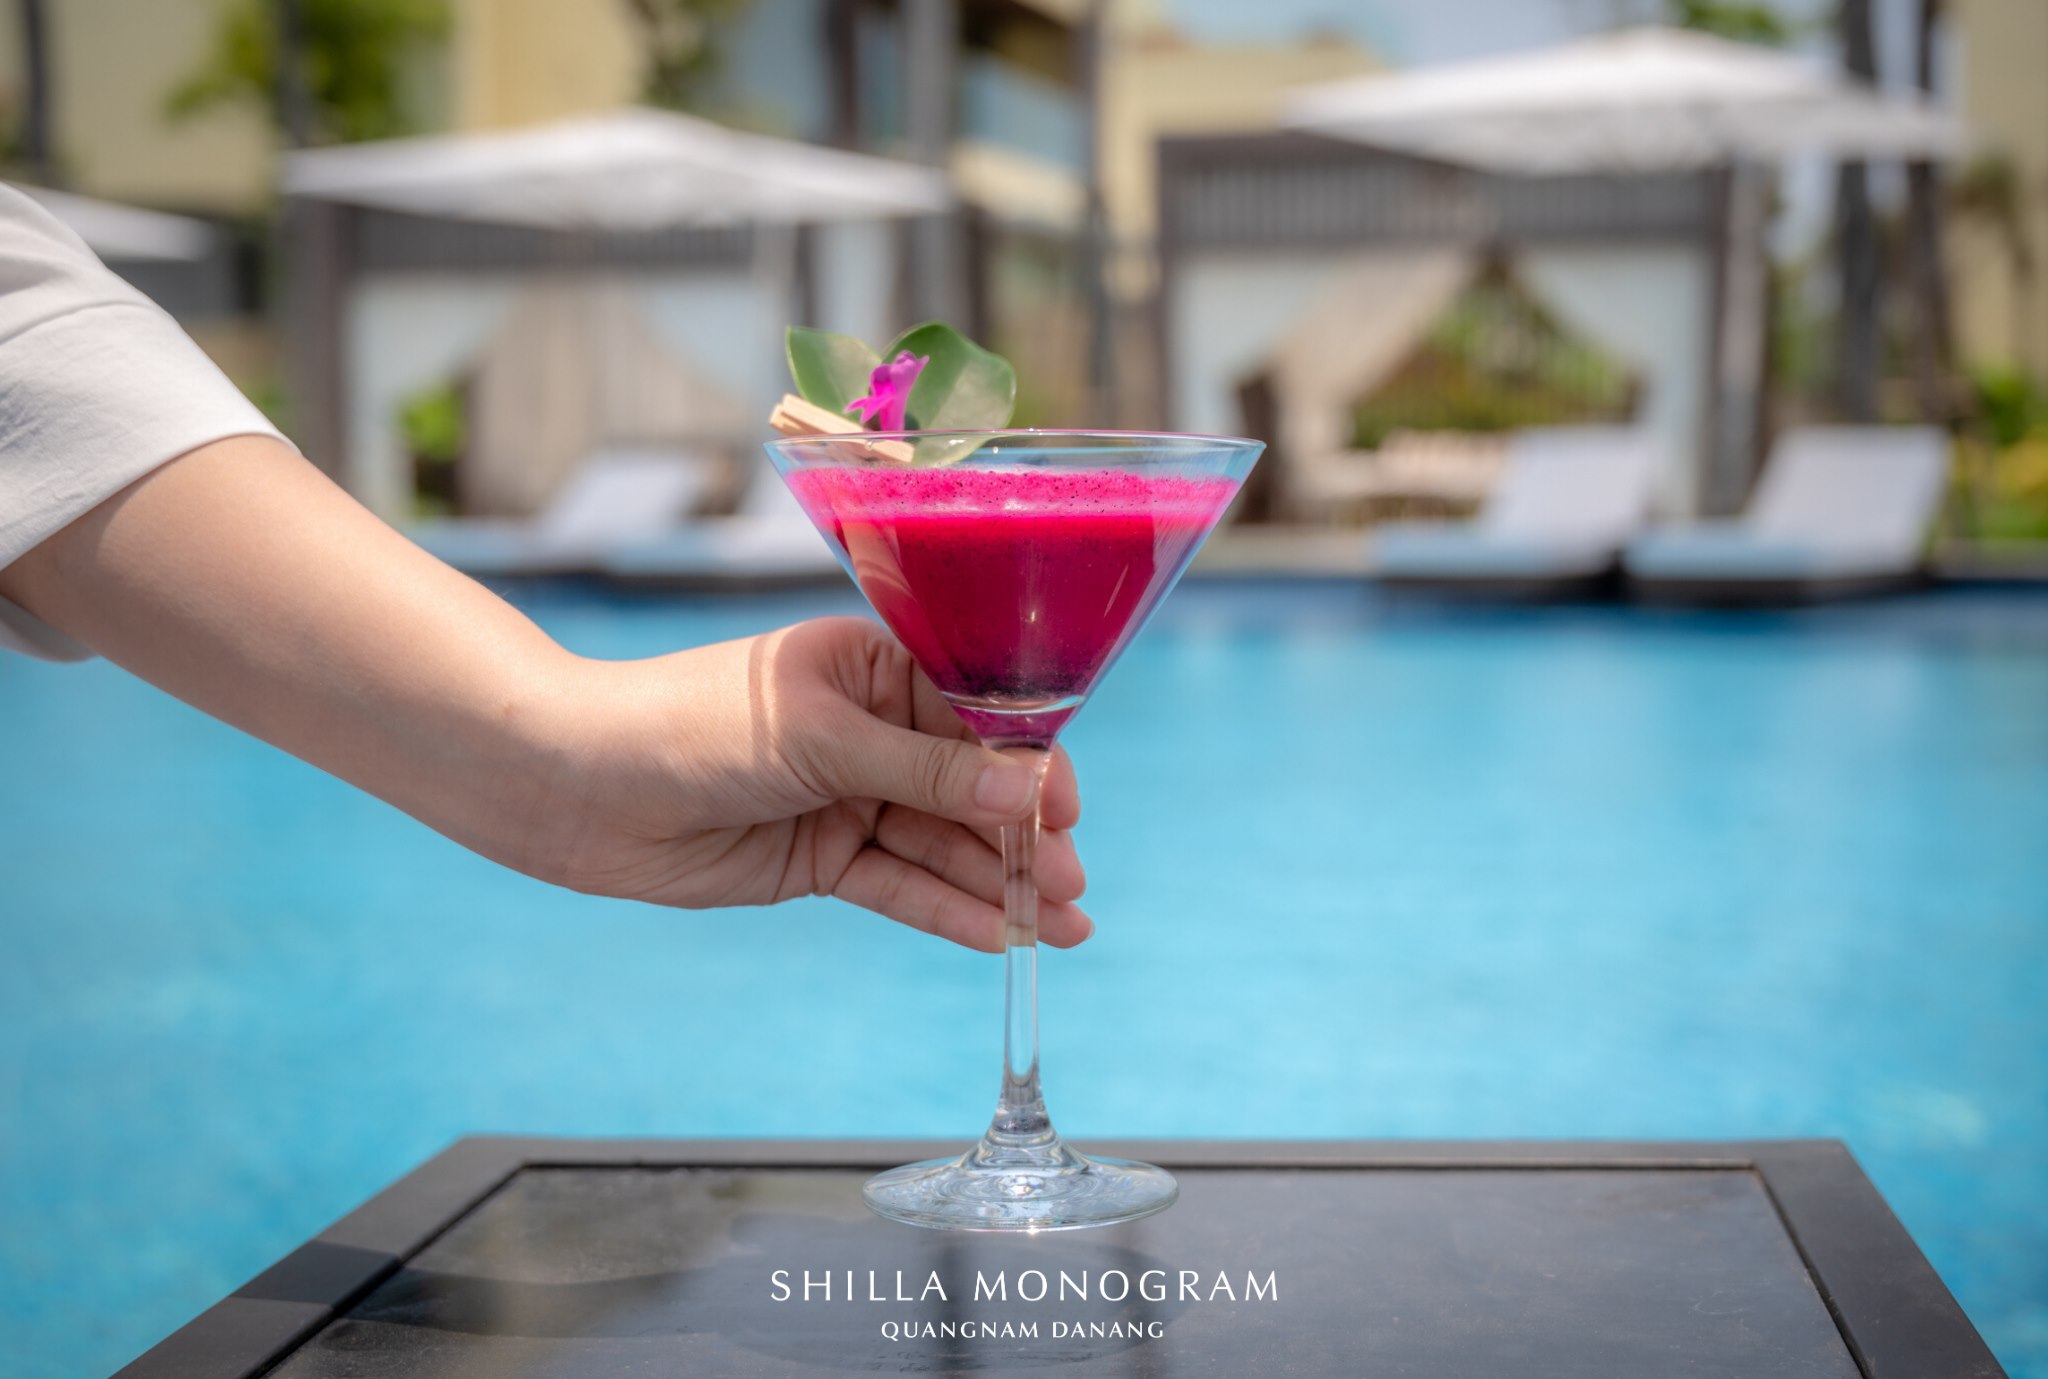 Shilla Monogram Quangnam Danang - khách sạn 5 sao có hồ bơi vô cực đẹp xuất sắc 19